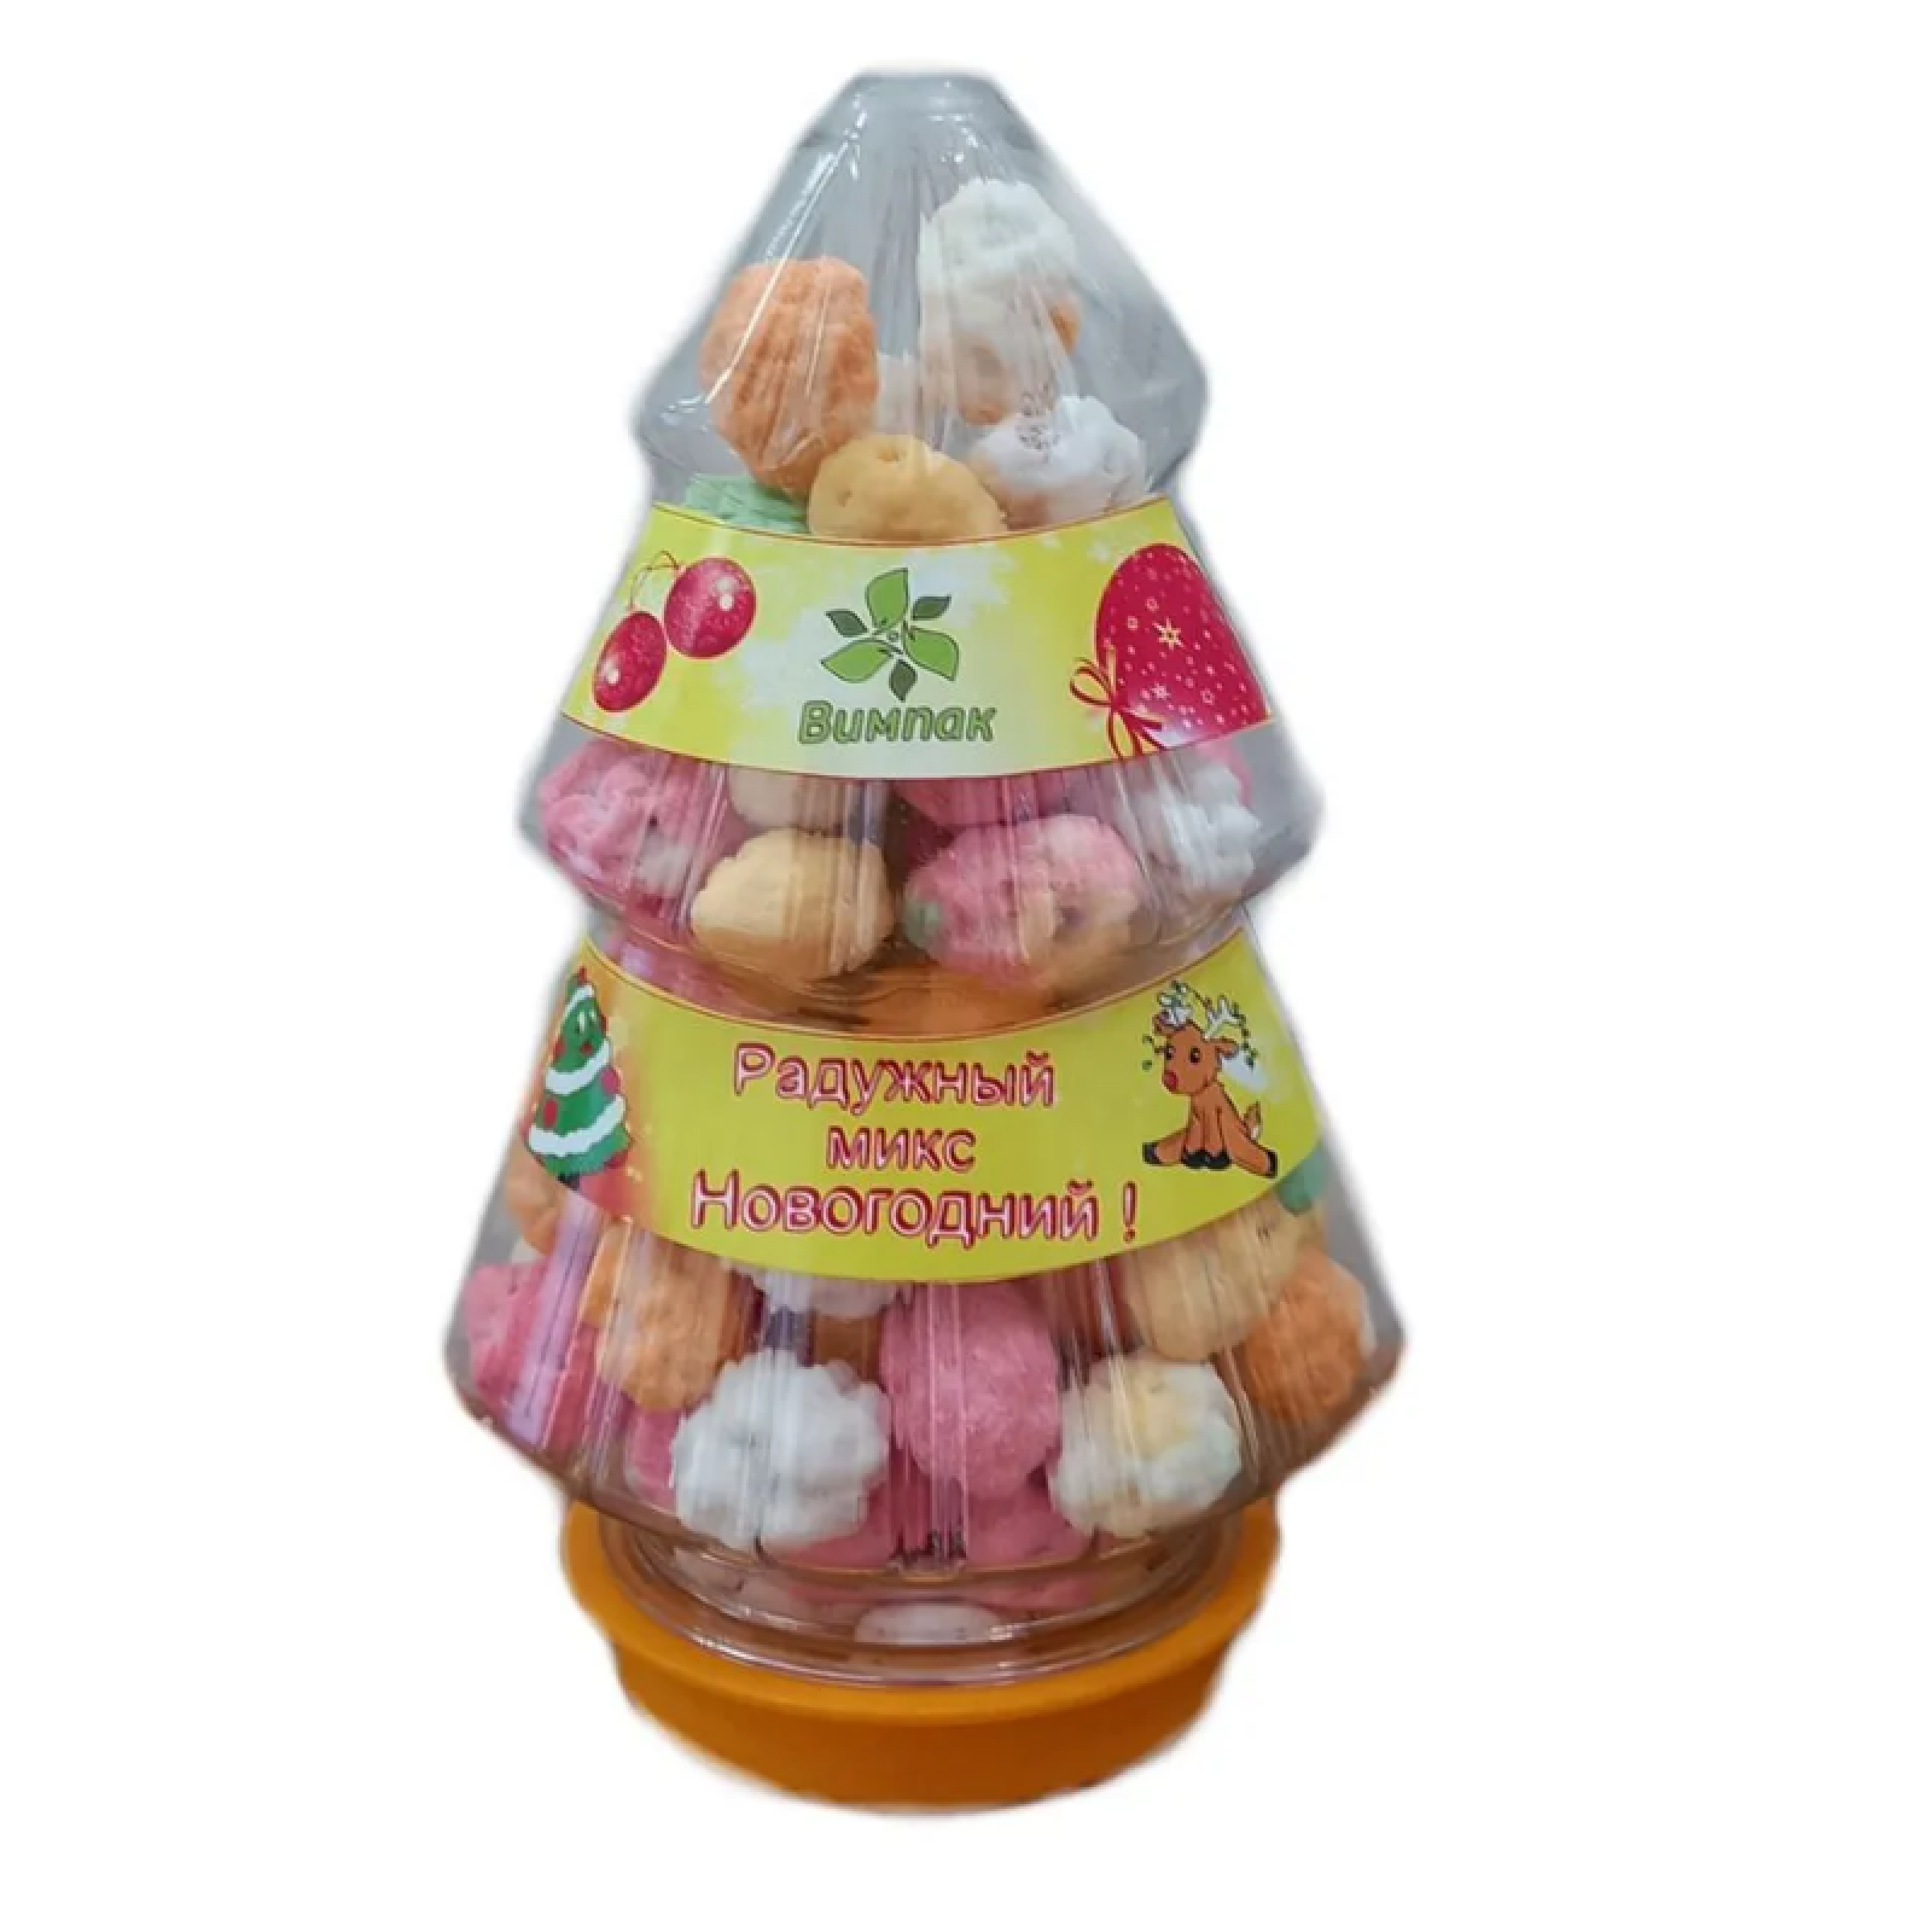 Новогодний набор ВИМПак Радужный микс, арахис в сахарной цветной глазури, 220 г